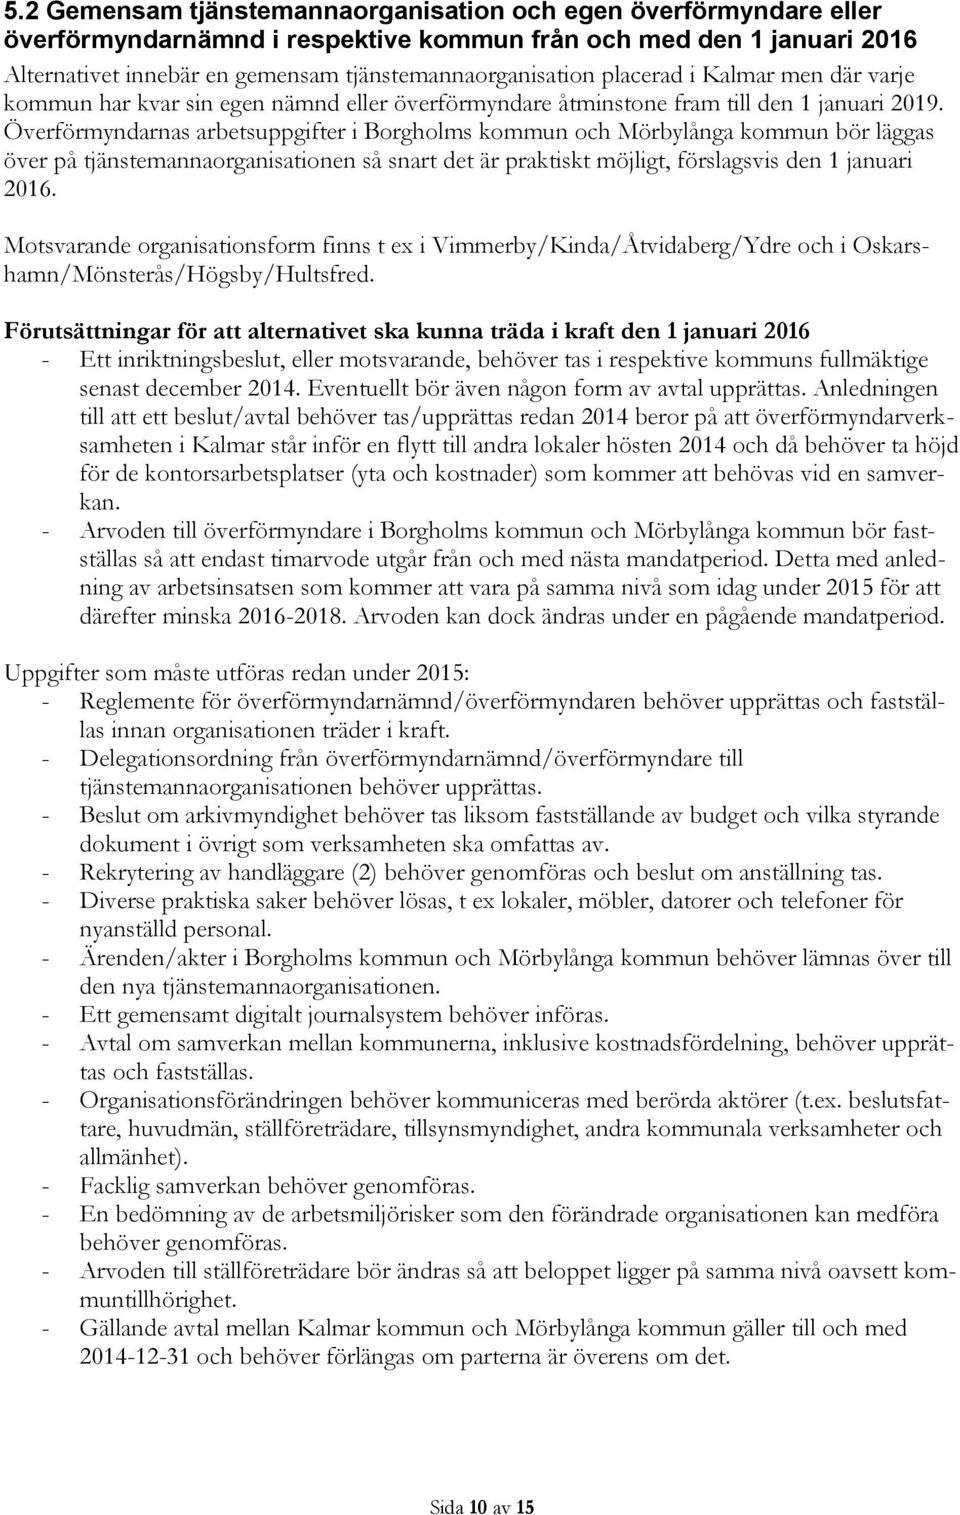 Överförmyndarnas arbetsuppgifter i Borgholms kommun och Mörbylånga kommun bör läggas över på tjänstemannaorganisationen så snart det är praktiskt möjligt, förslagsvis den 1 januari 2016.